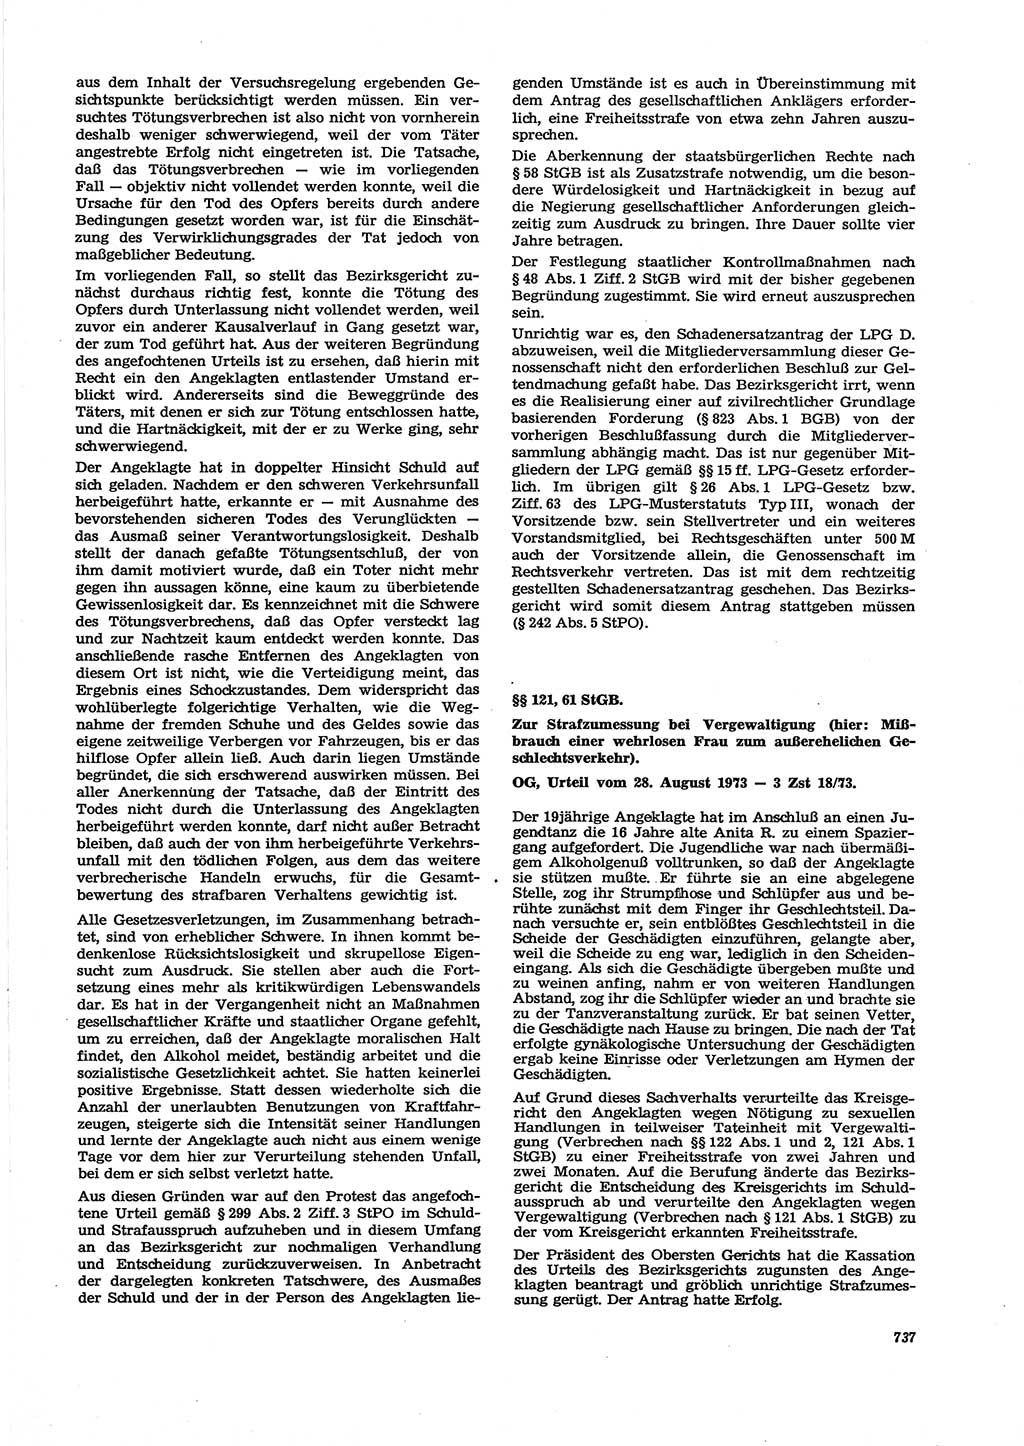 Neue Justiz (NJ), Zeitschrift für Recht und Rechtswissenschaft [Deutsche Demokratische Republik (DDR)], 27. Jahrgang 1973, Seite 737 (NJ DDR 1973, S. 737)